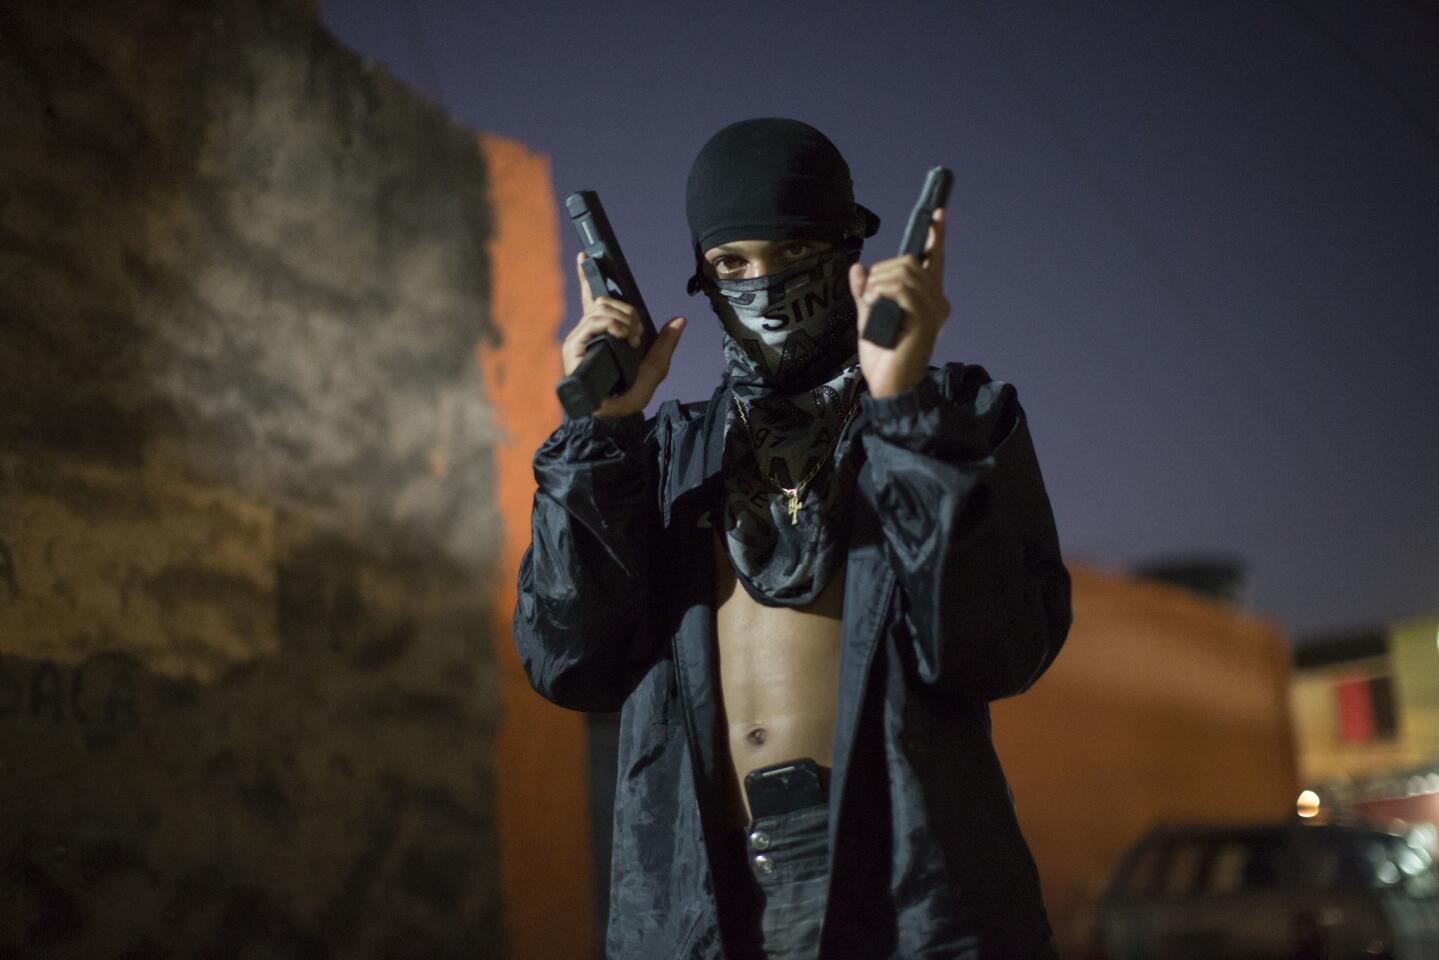 11/julio/2016: Un joven traficante de drogas enmascarado posan para fotos con sus armas en una favela de Río de Janeiro, en Brasil. Los jóvenes trabajan como guardias de seguridad, vigías y distribuidores para los capos de la droga en las favelas.